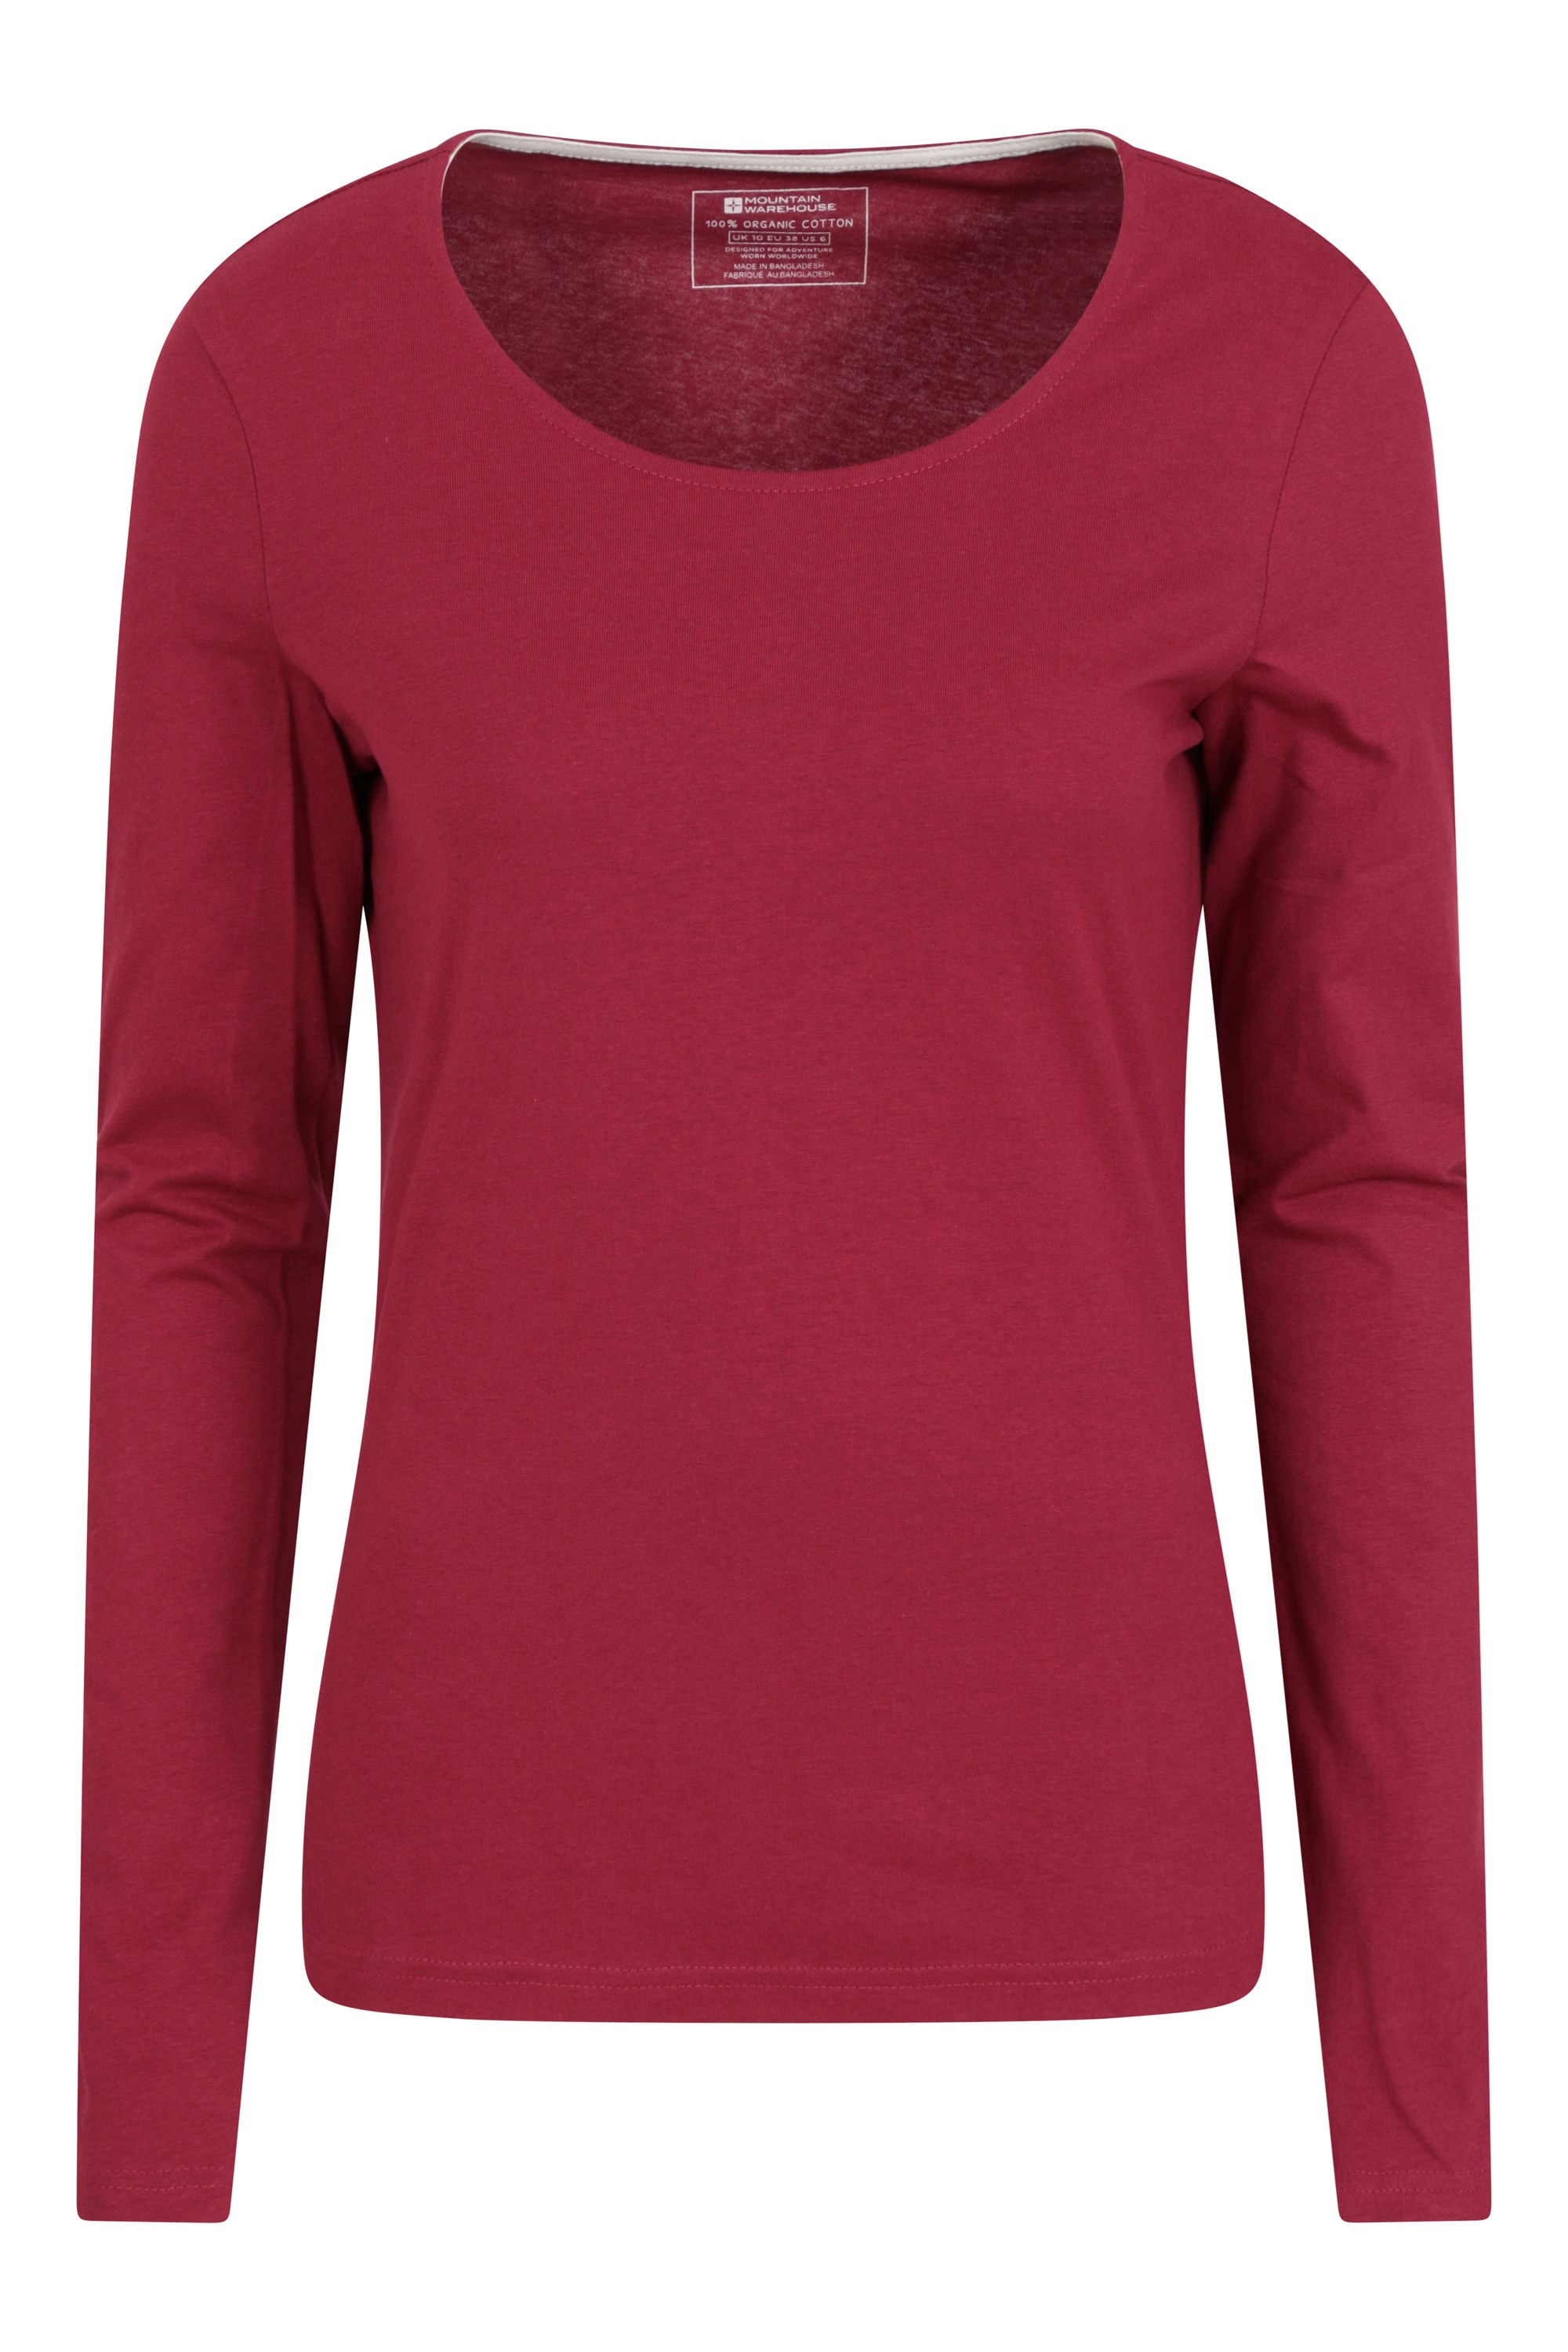 Eden damski organiczny t-shirt z okrągłym dekoltem - Red